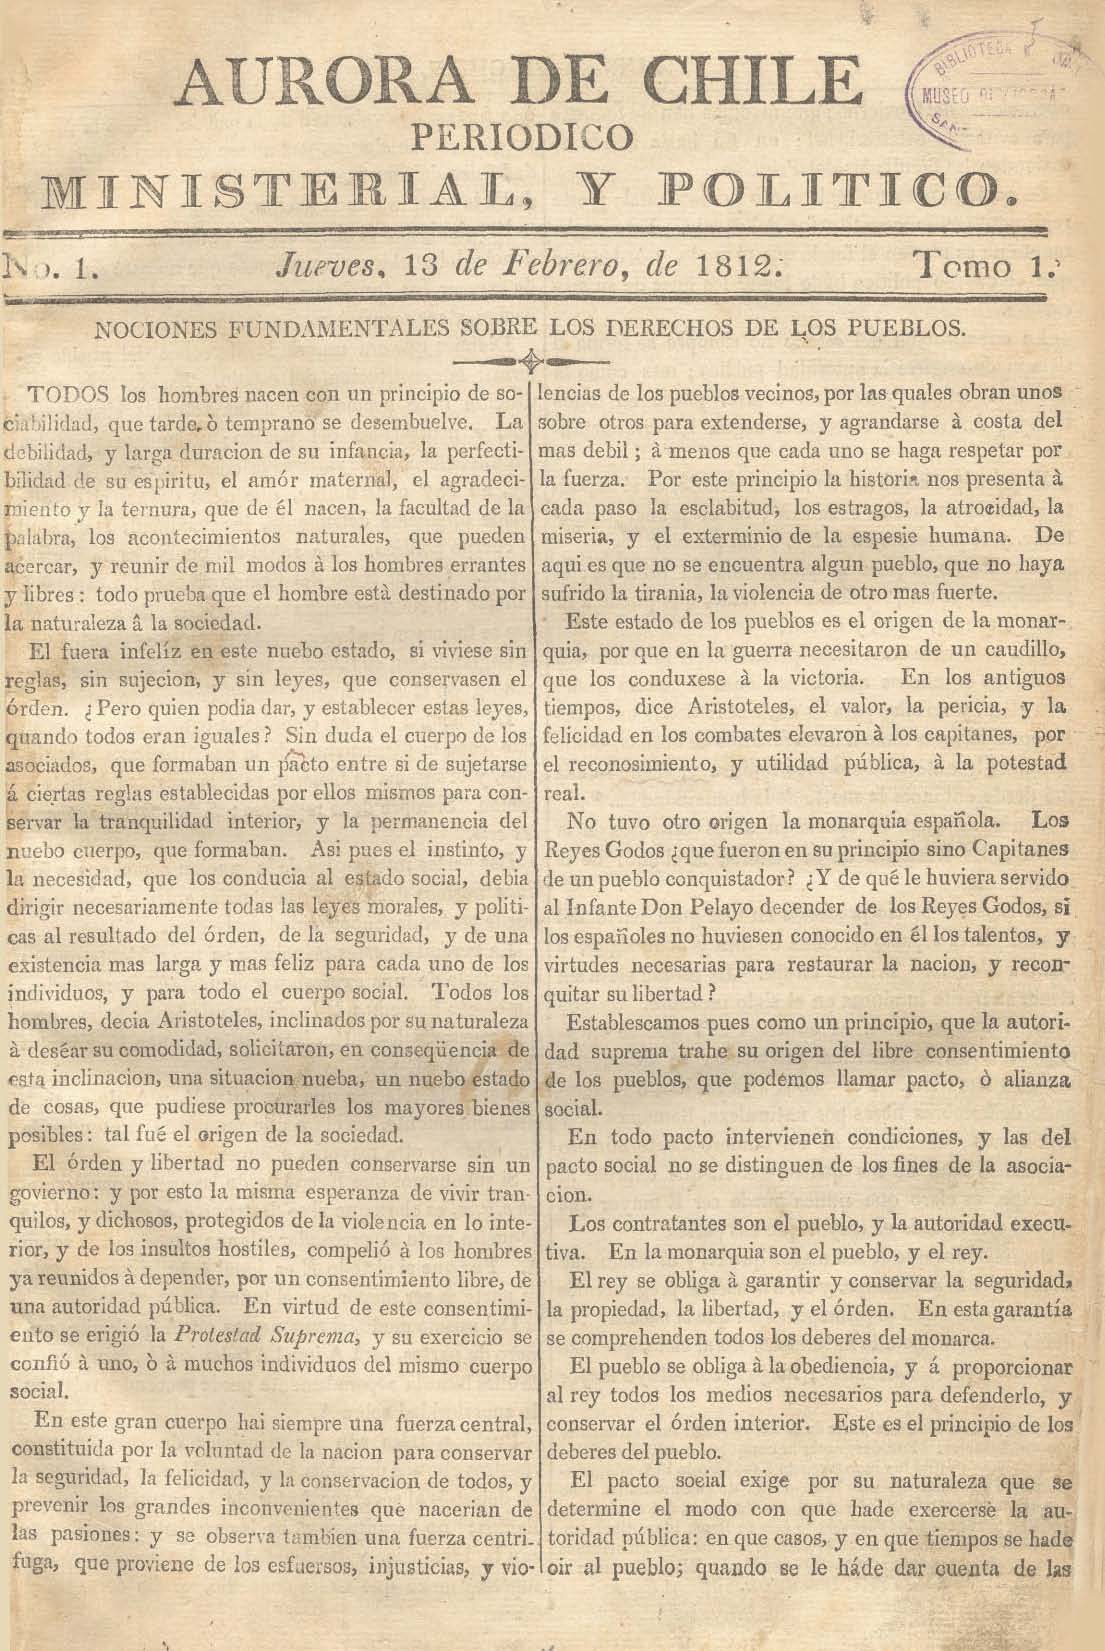 											Ver Núm. 9 (1813): Tomo II. Jueves 11 de Marzo
										